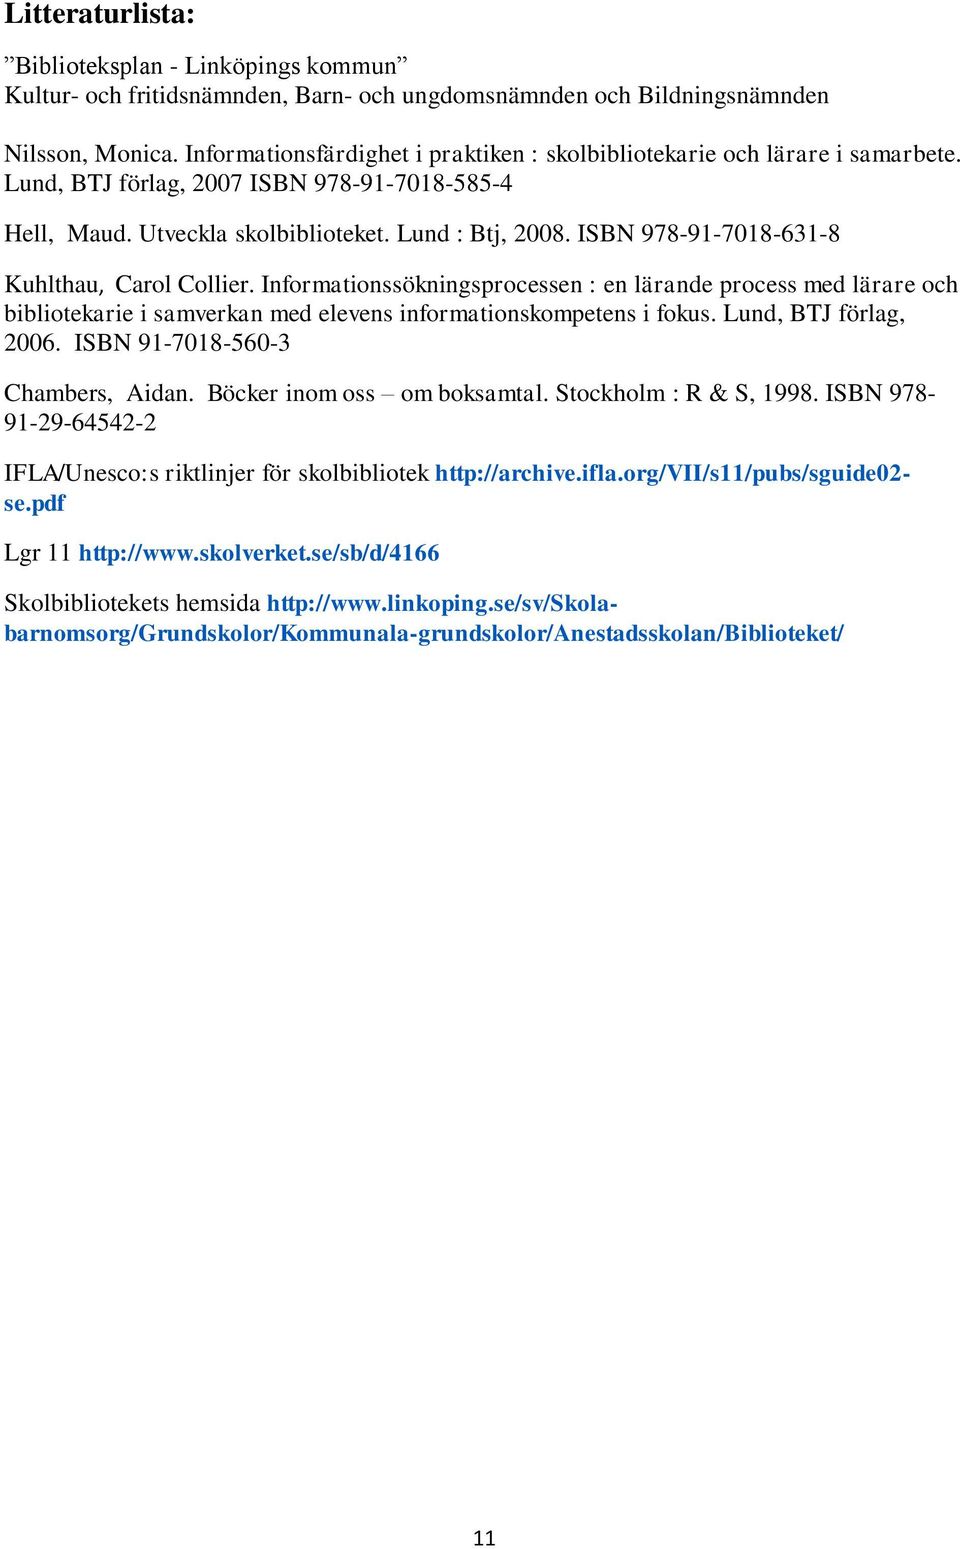 ISBN 978-91-7018-631-8 Kuhlthau, Carol Collier. Informationssökningsprocessen : en lärande process med lärare och bibliotekarie i samverkan med elevens informationskompetens i fokus.